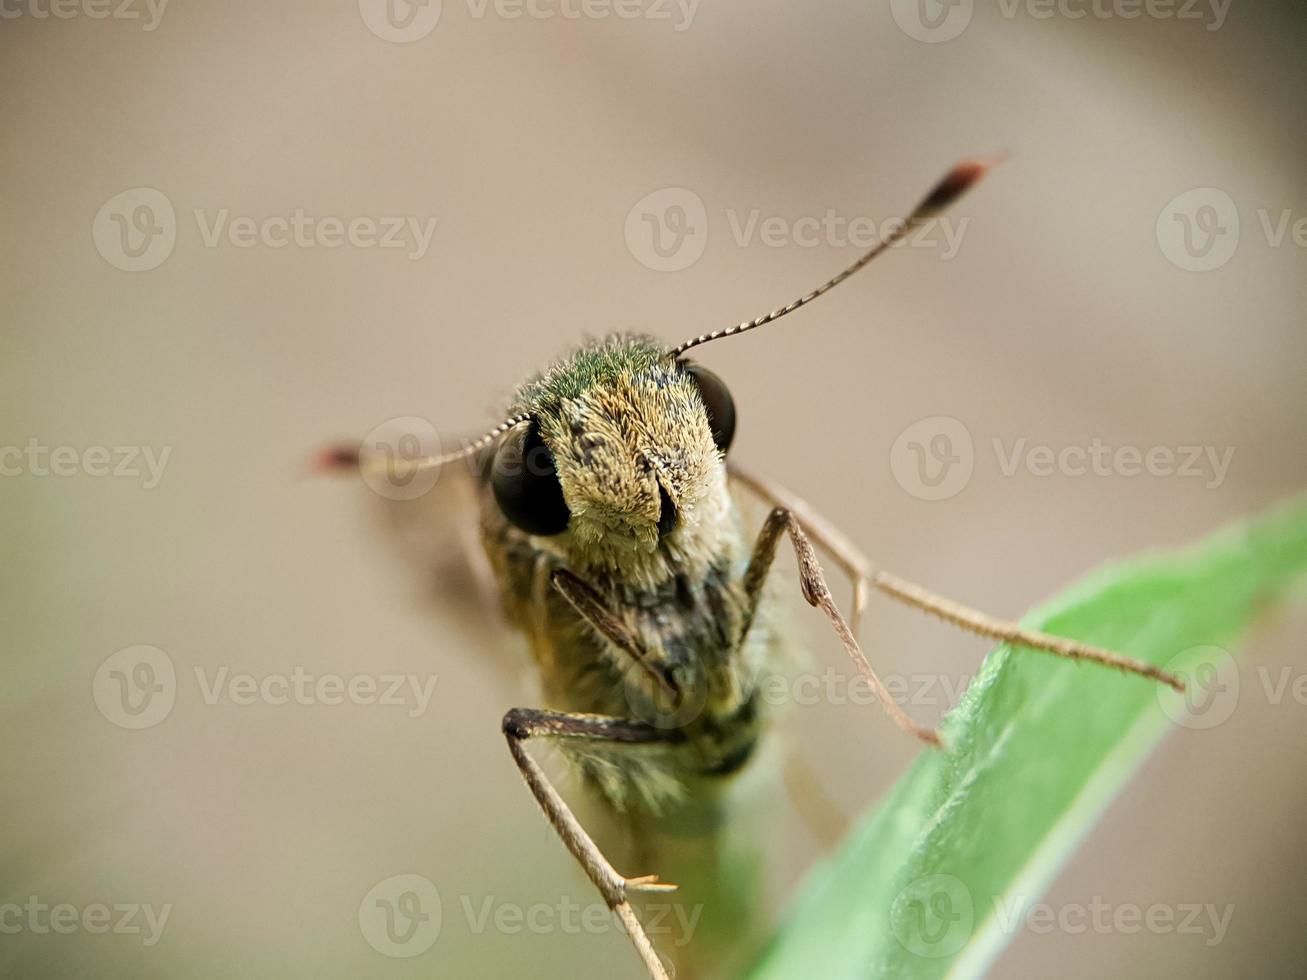 closeup de borbo cinnara ou arroz rápido em uma folha. foto macro de insetos